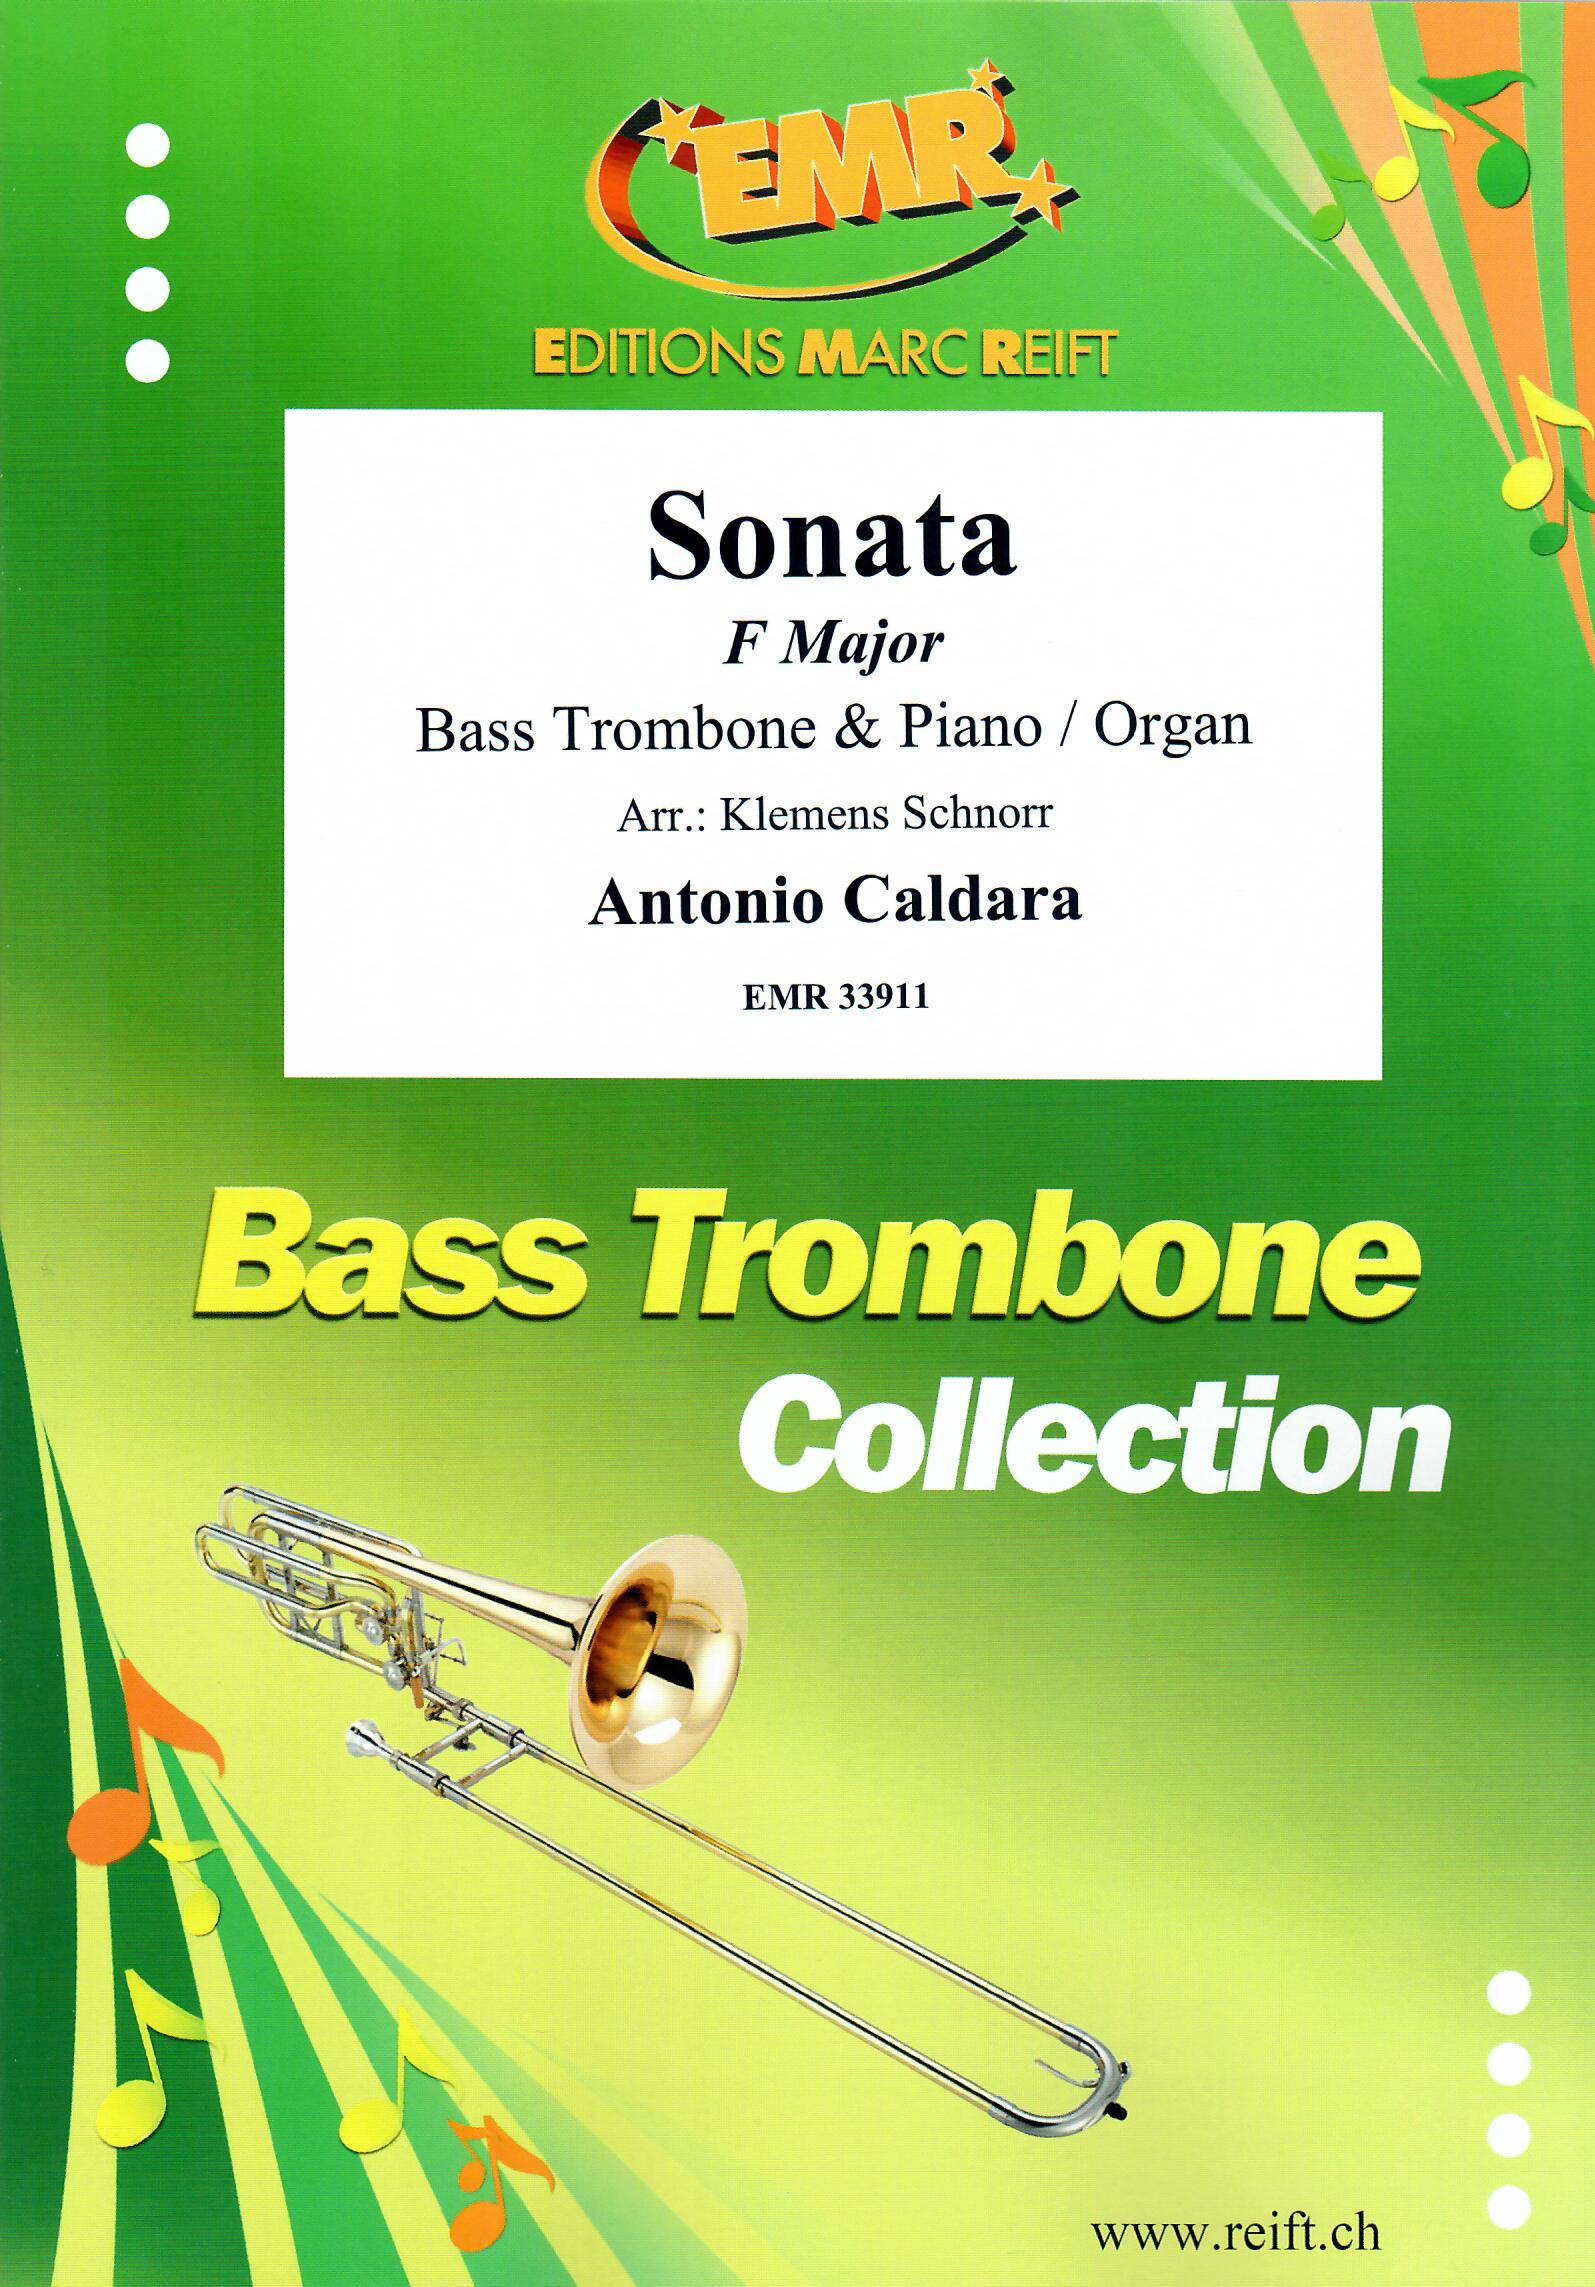 SONATA IN F MAJOR, EMR Bass Trombone